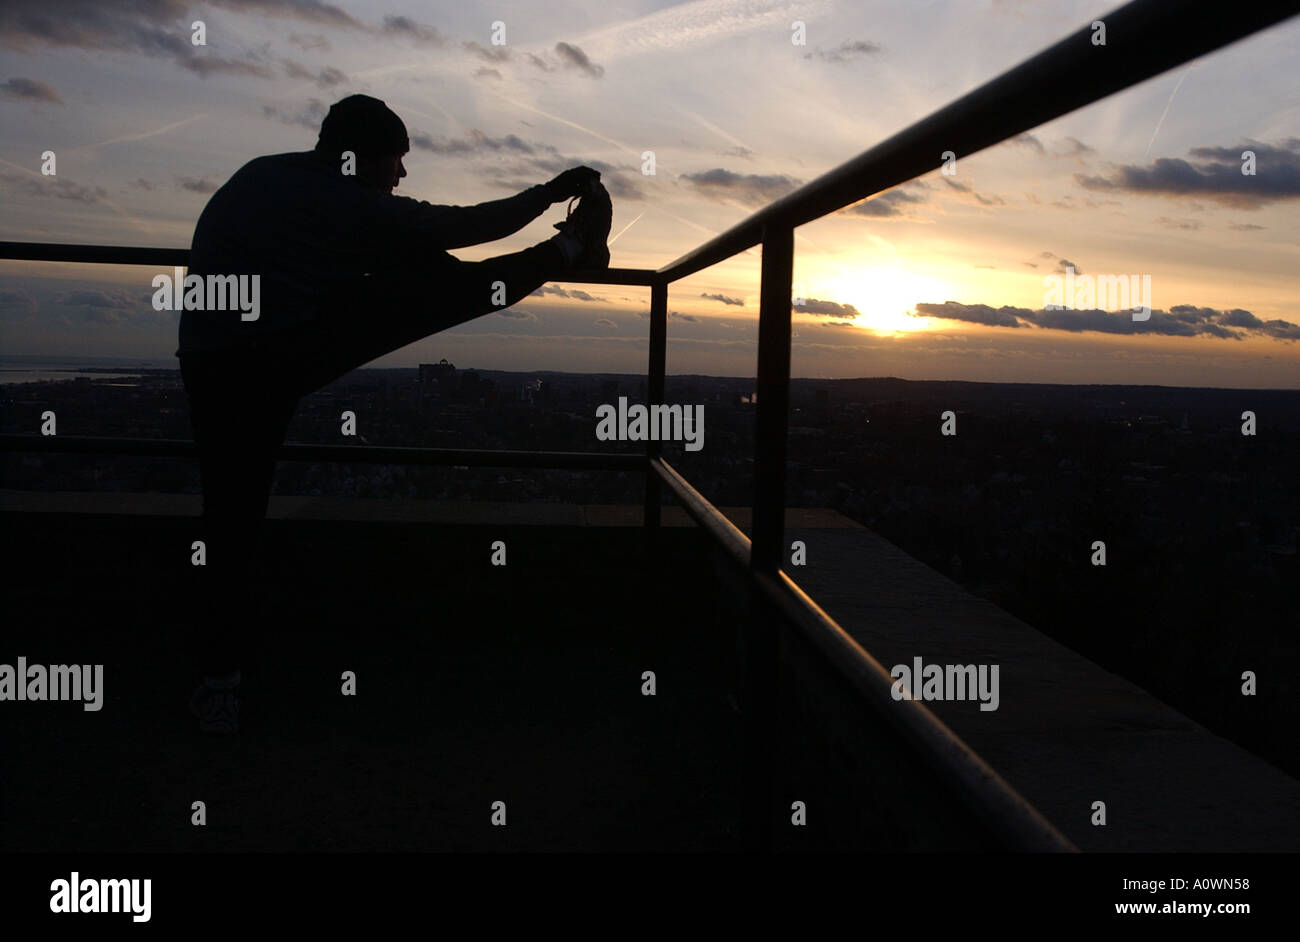 Un coureur s'étend sur une balustrade avec un coucher de soleil derrière lui Banque D'Images